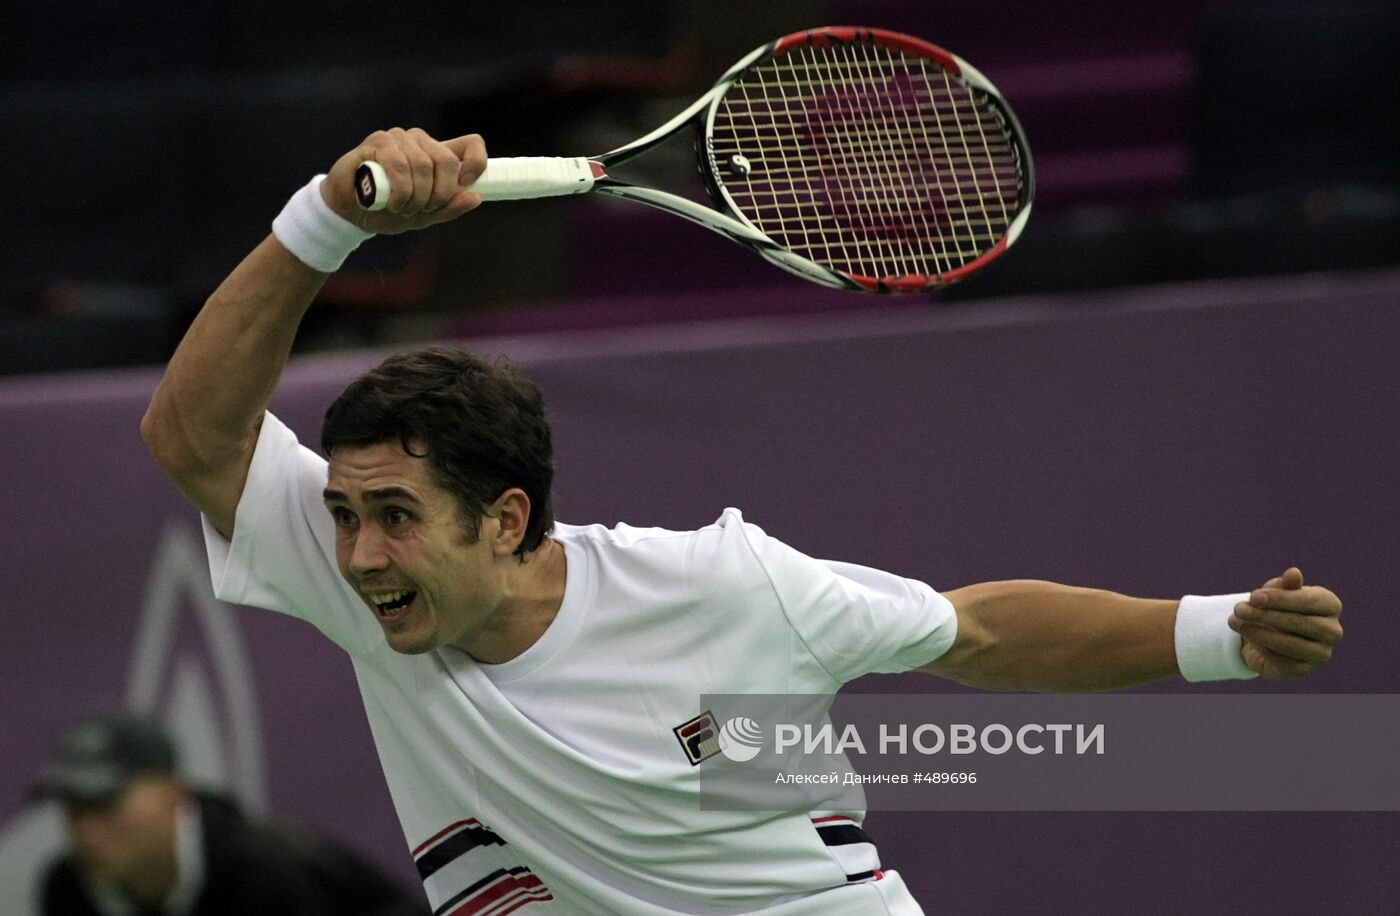 Игорь Куницин. St. Petersburg Open 2009